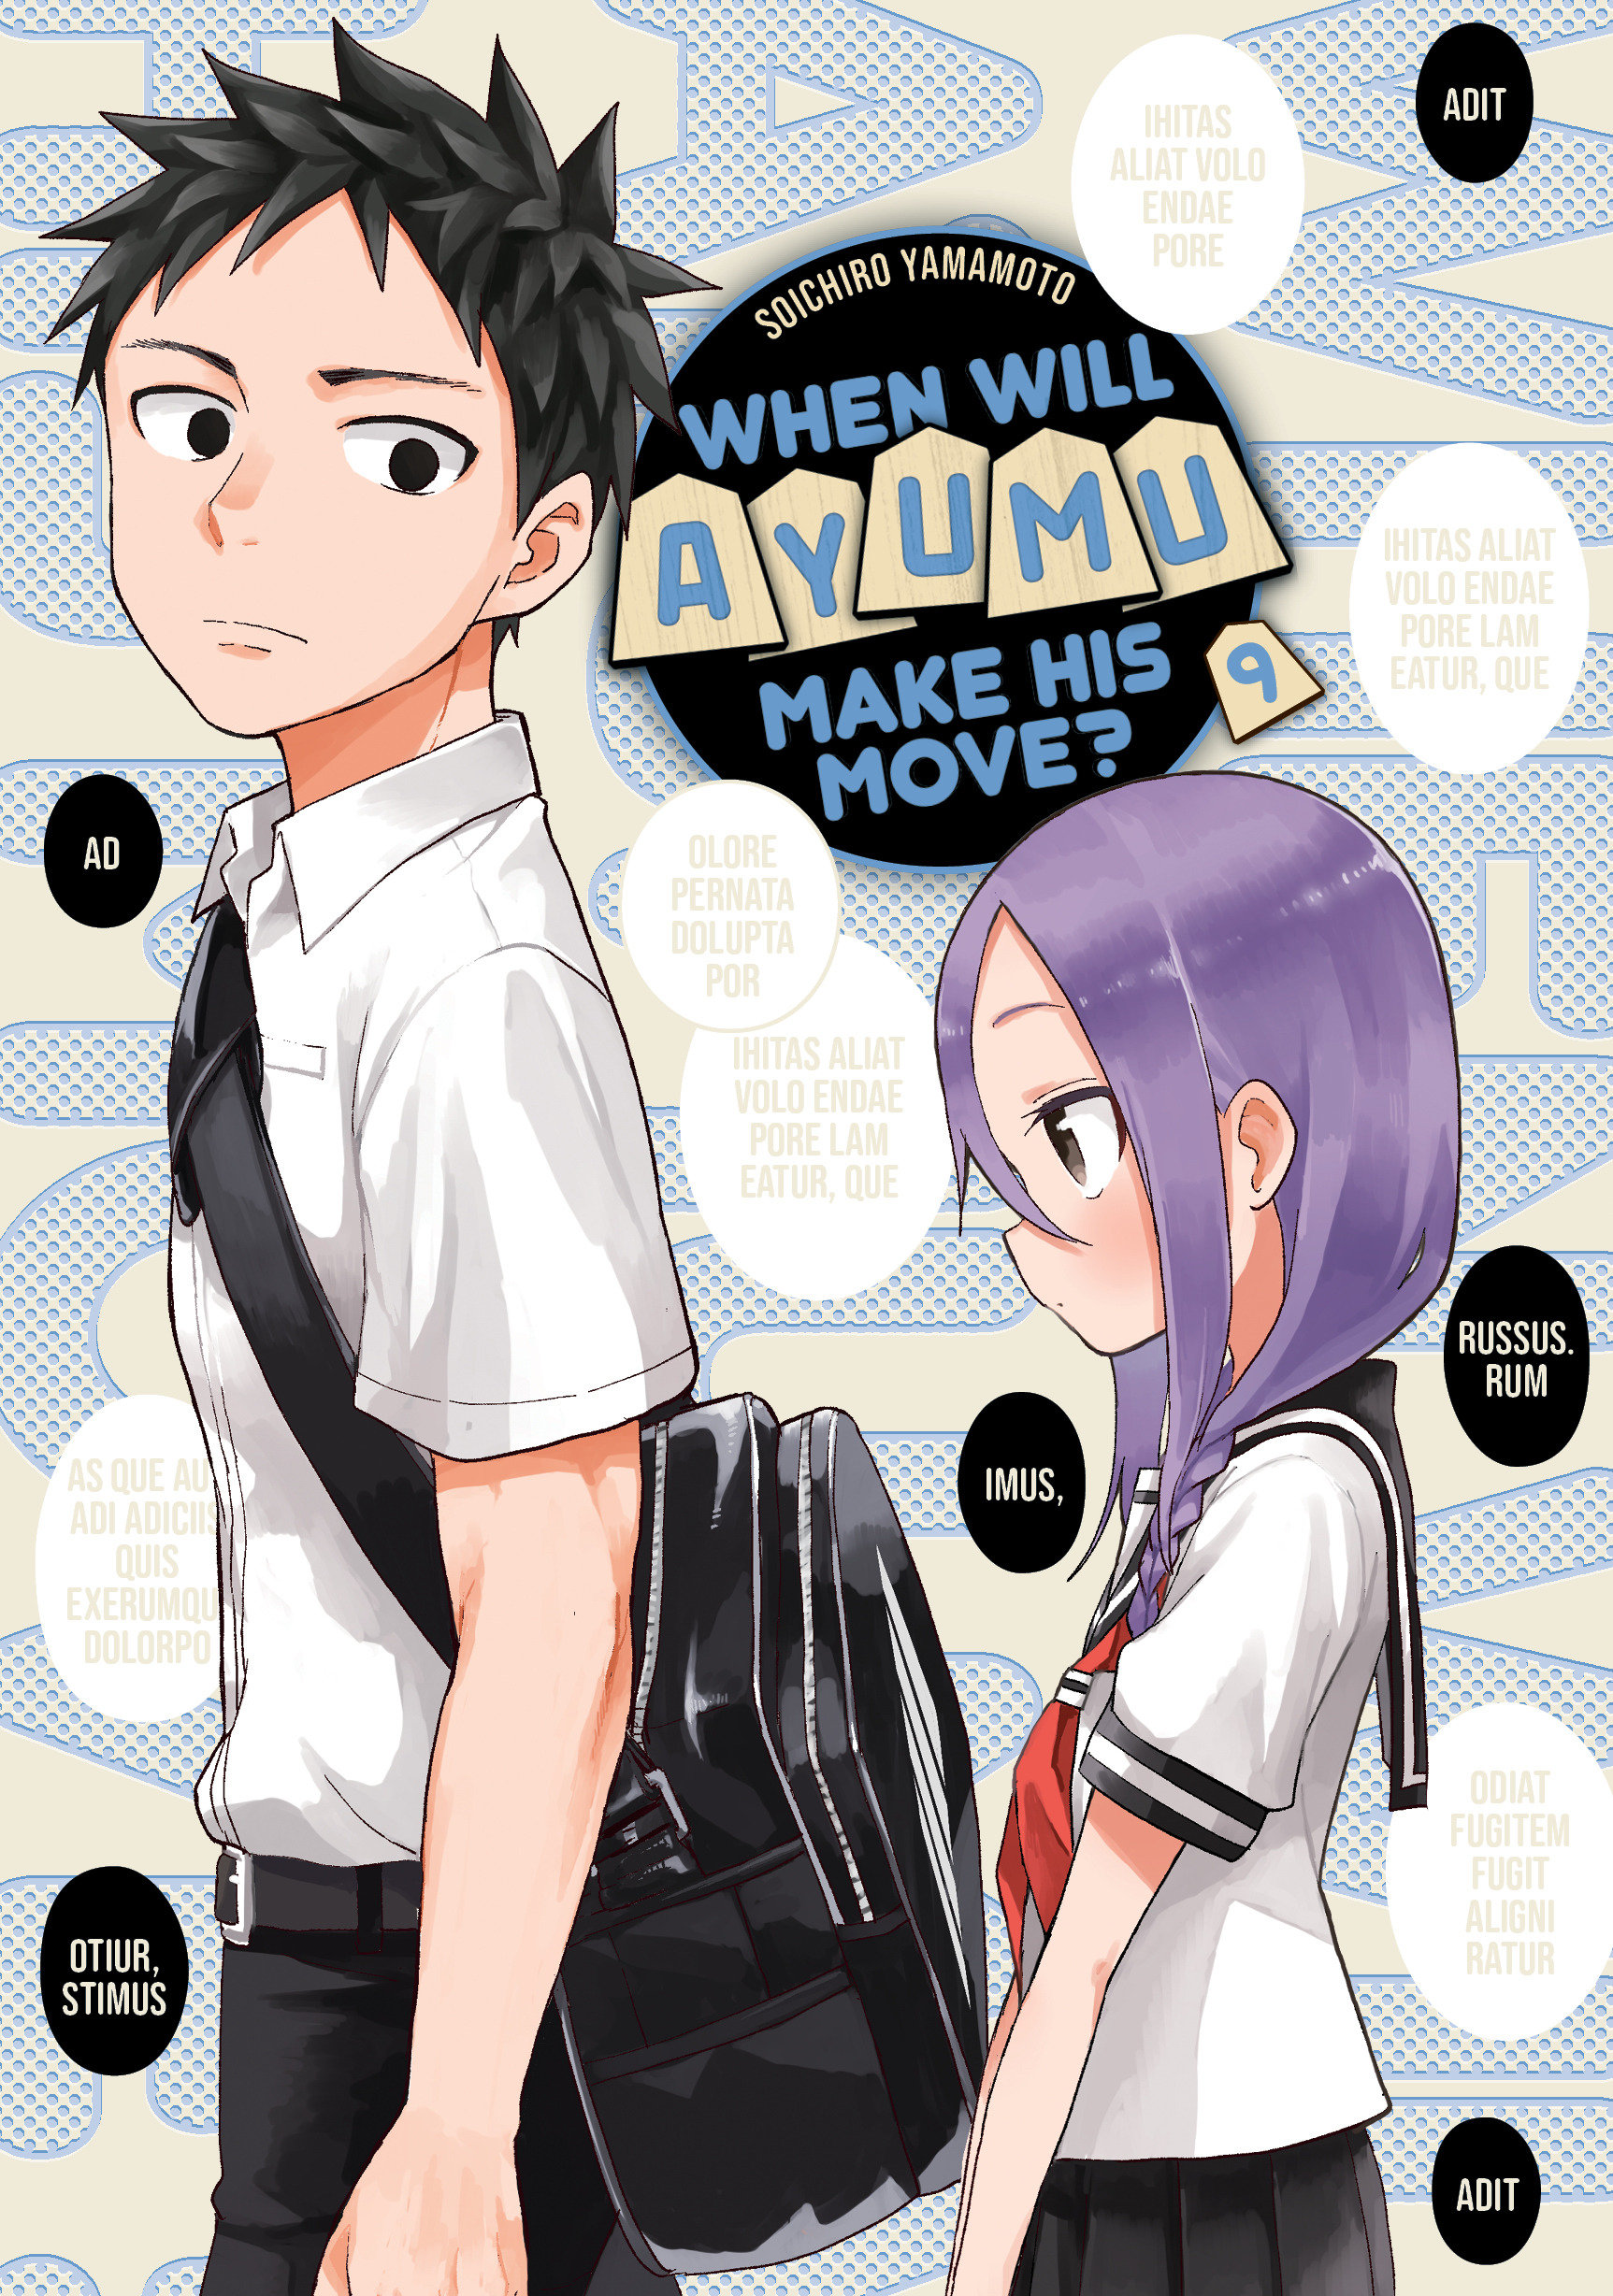 When Will Ayumu Make His Move? Manga Volume 9